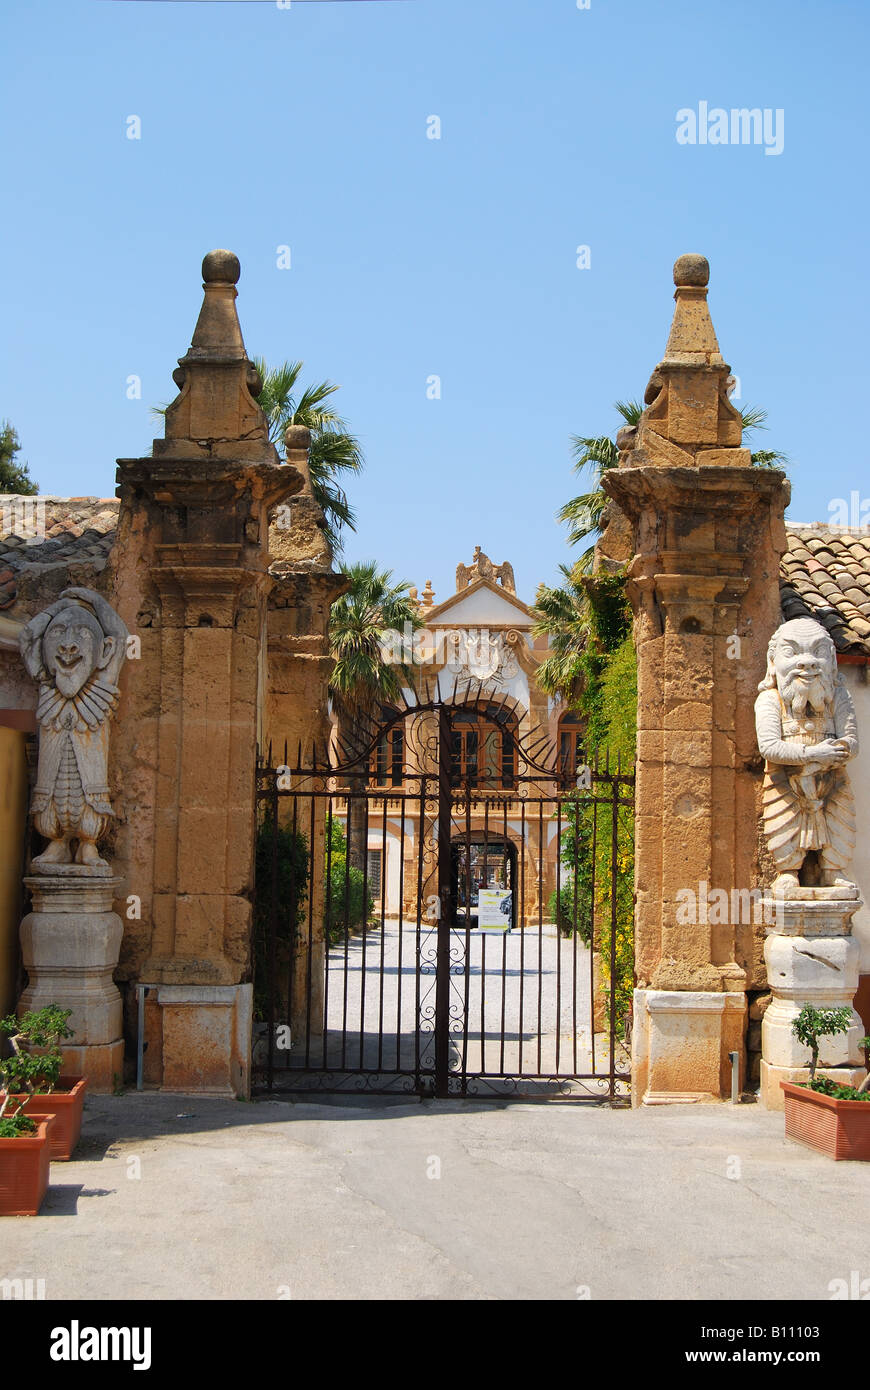 Vecchi cancelli di Villa Palagonia, Piazza Garibaldi, Citta di Bagheria, provincia di Palermo, Sicilia, Italia Foto Stock